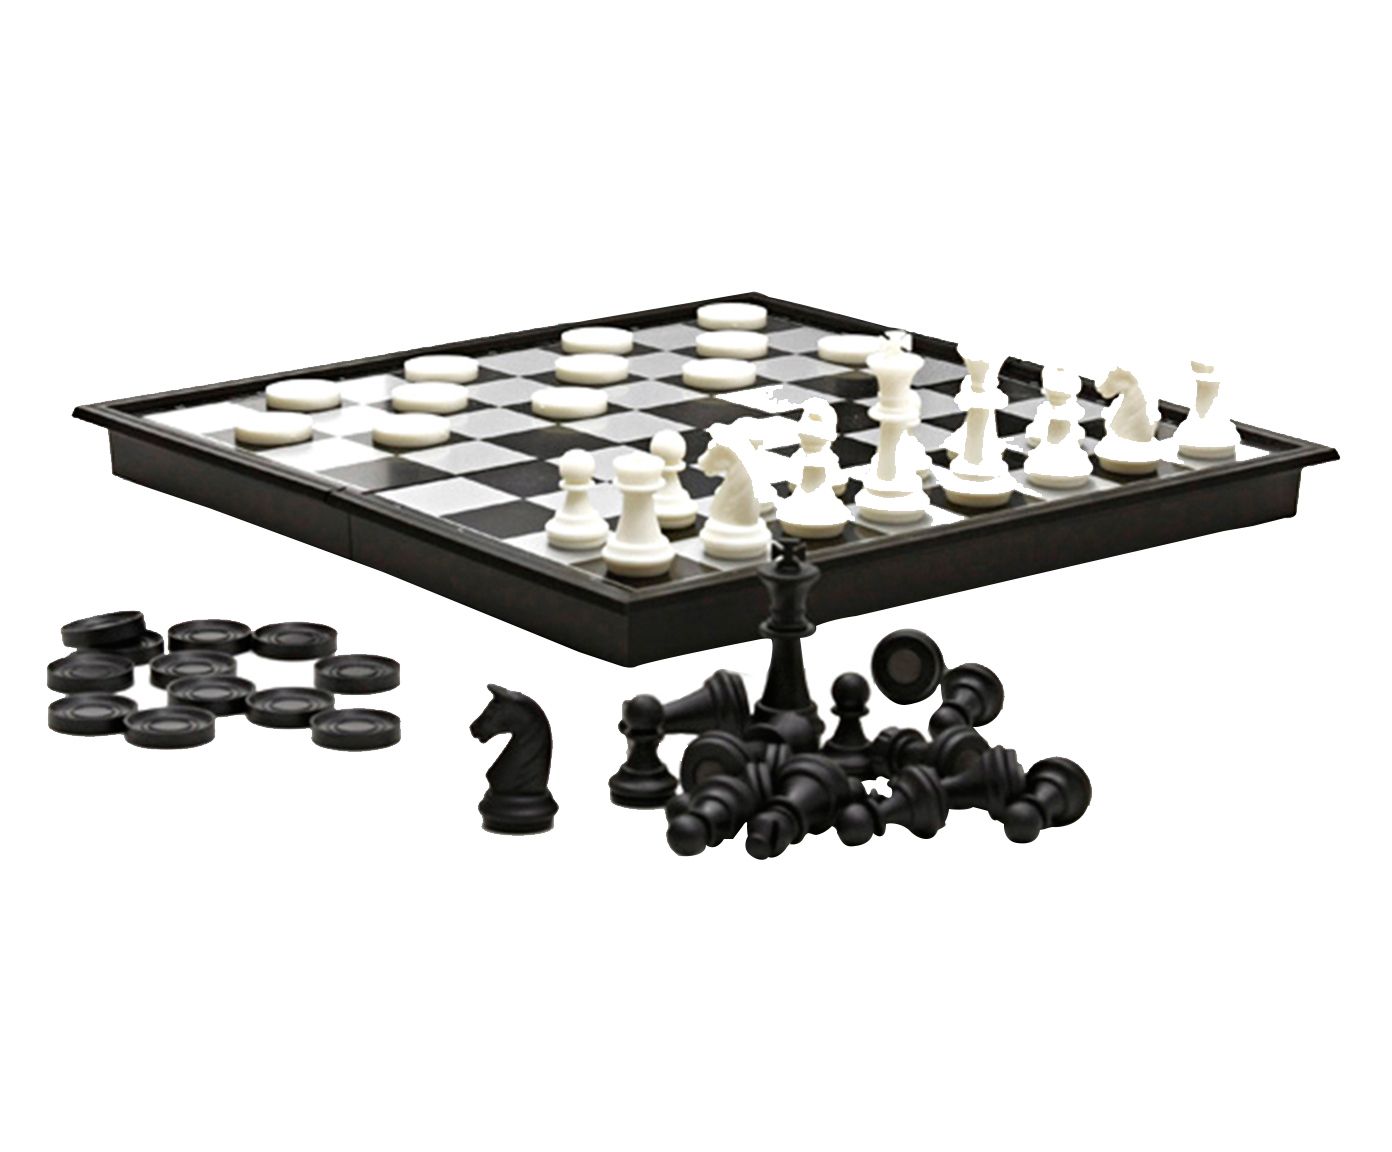 Jogo de Dama e Xadrez Chess & Cheekers | Westwing.com.br